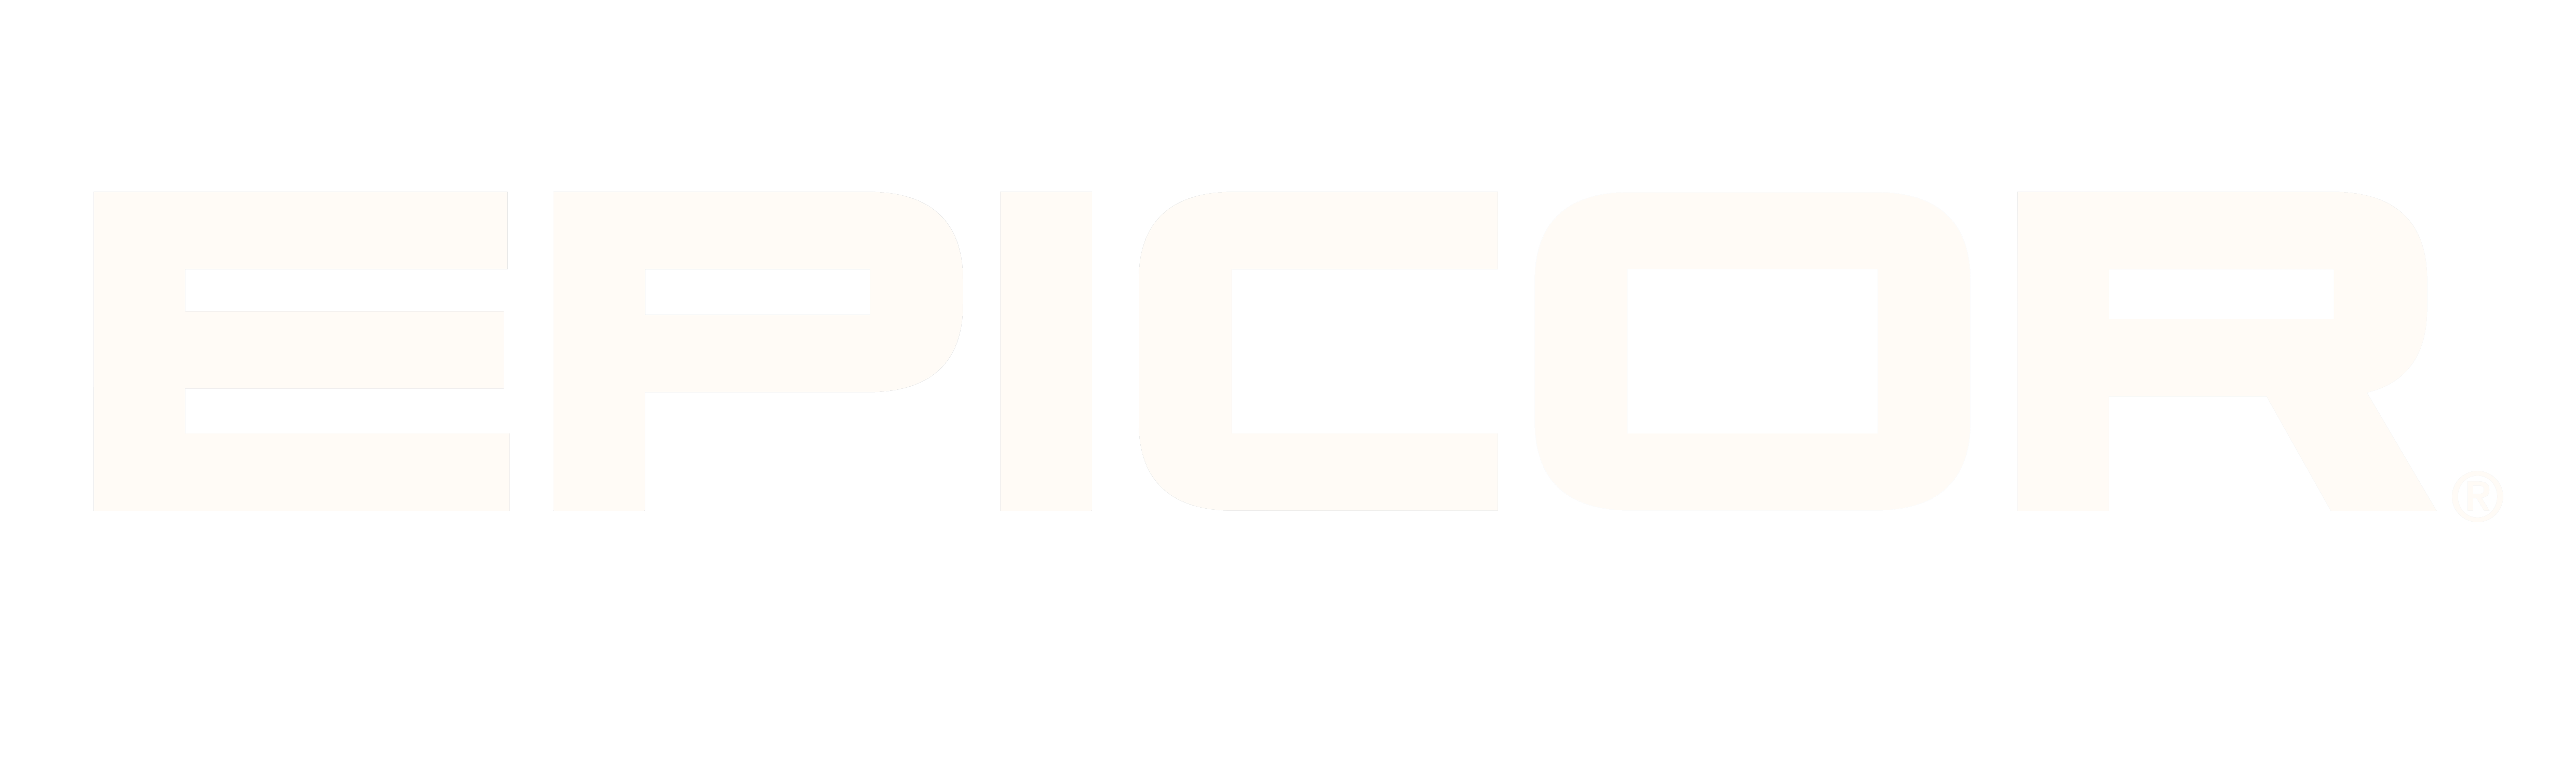 Epicor Logo - Epicor Logo Med RGB White. Industrial Machinery Digest